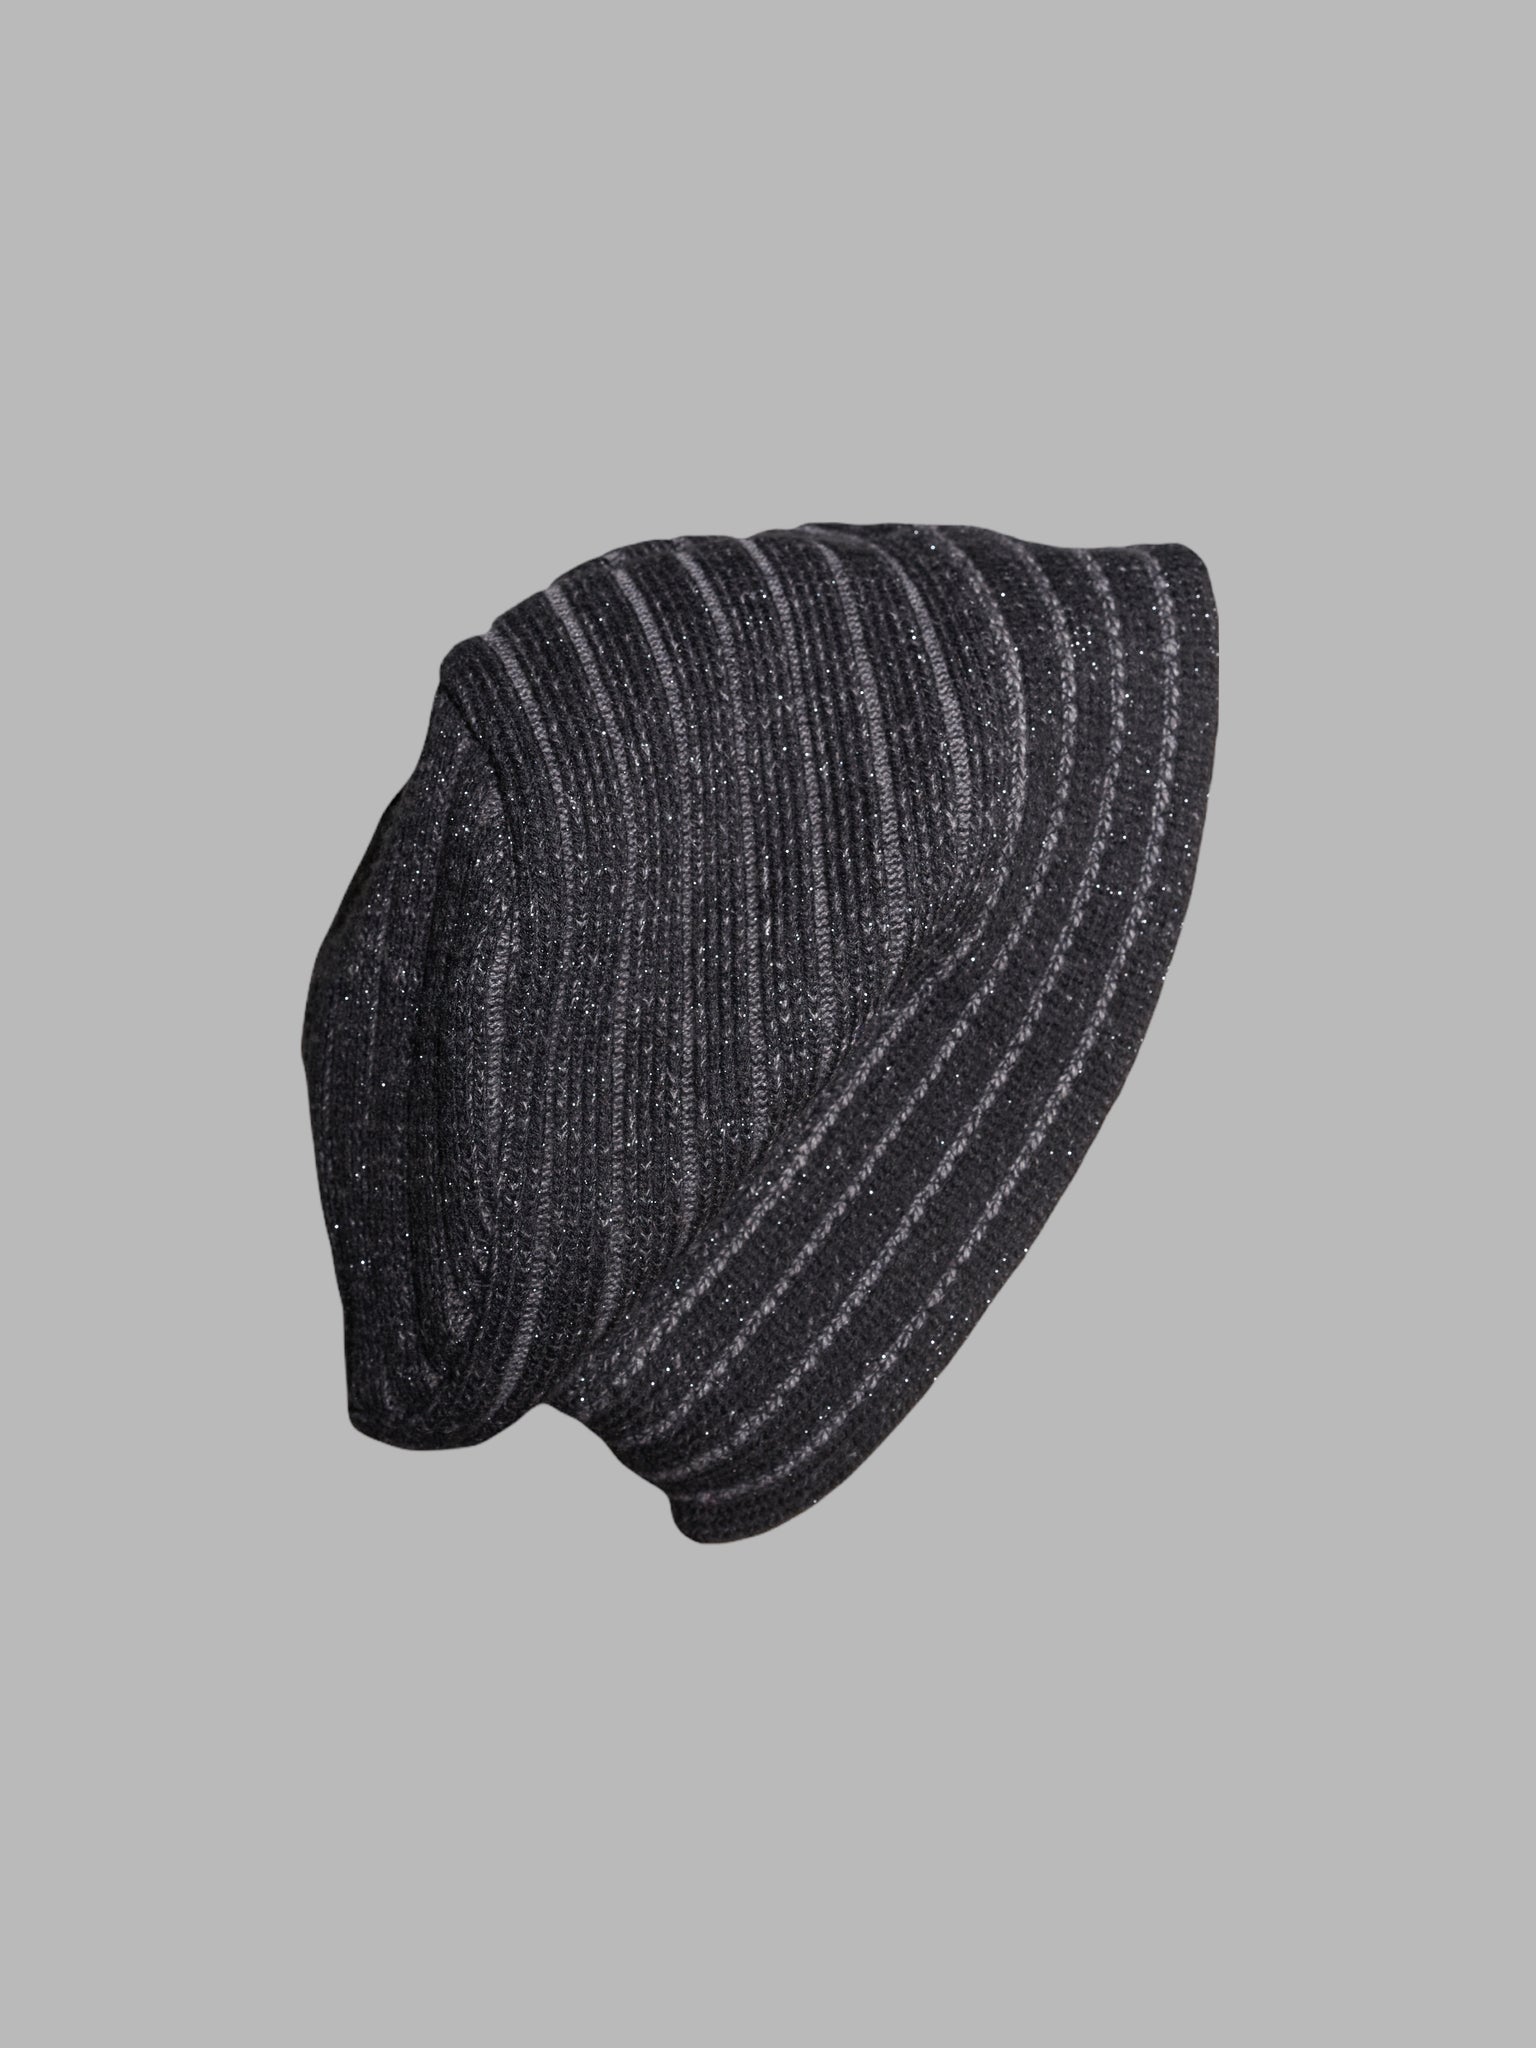 Jean Colonna dark grey knitted bucket hat